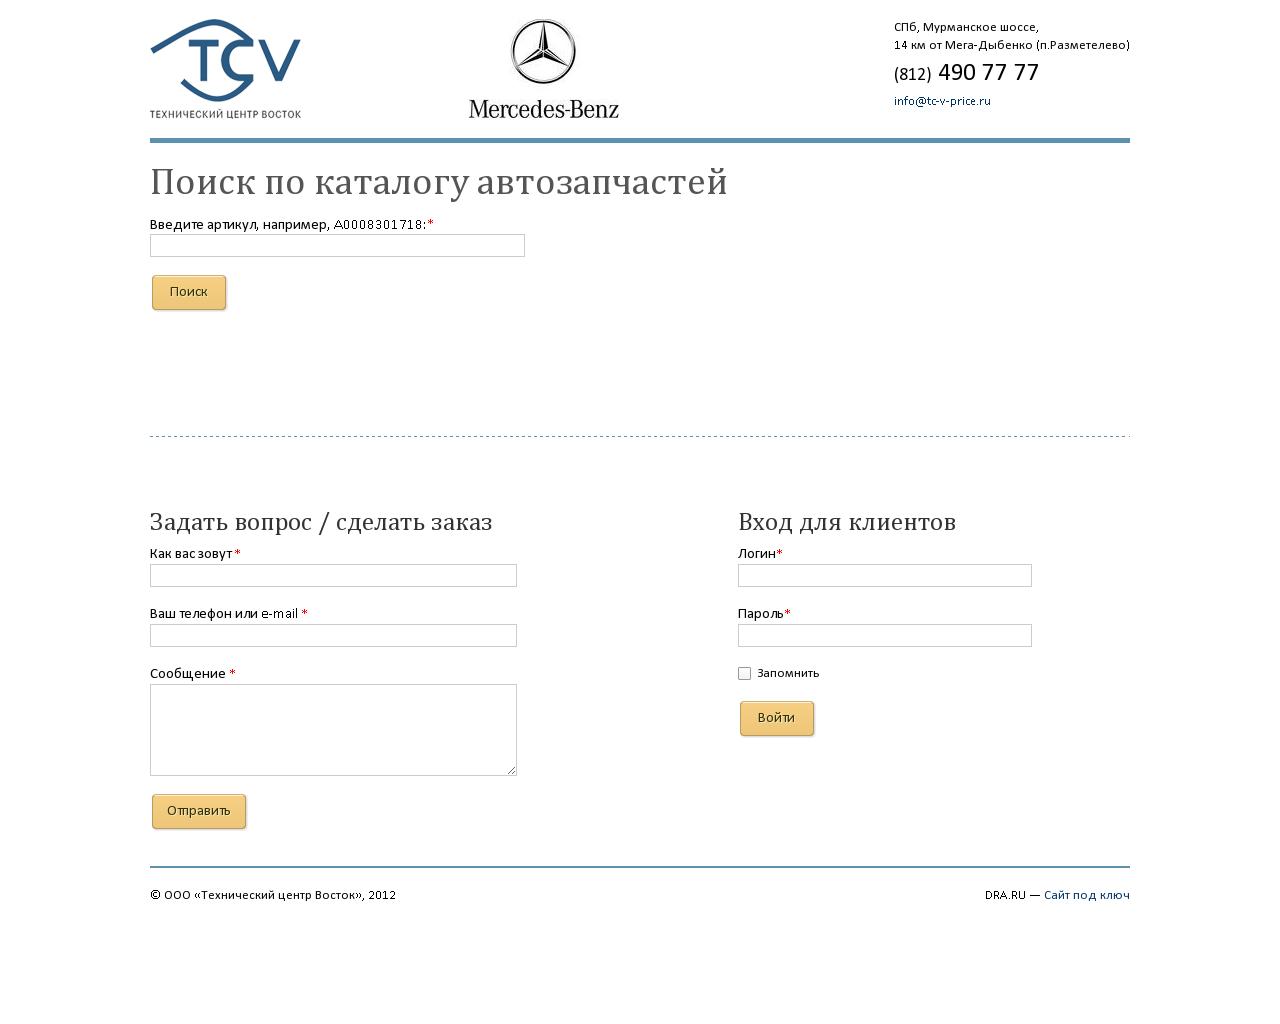 Изображение сайта tc-v-price.ru в разрешении 1280x1024